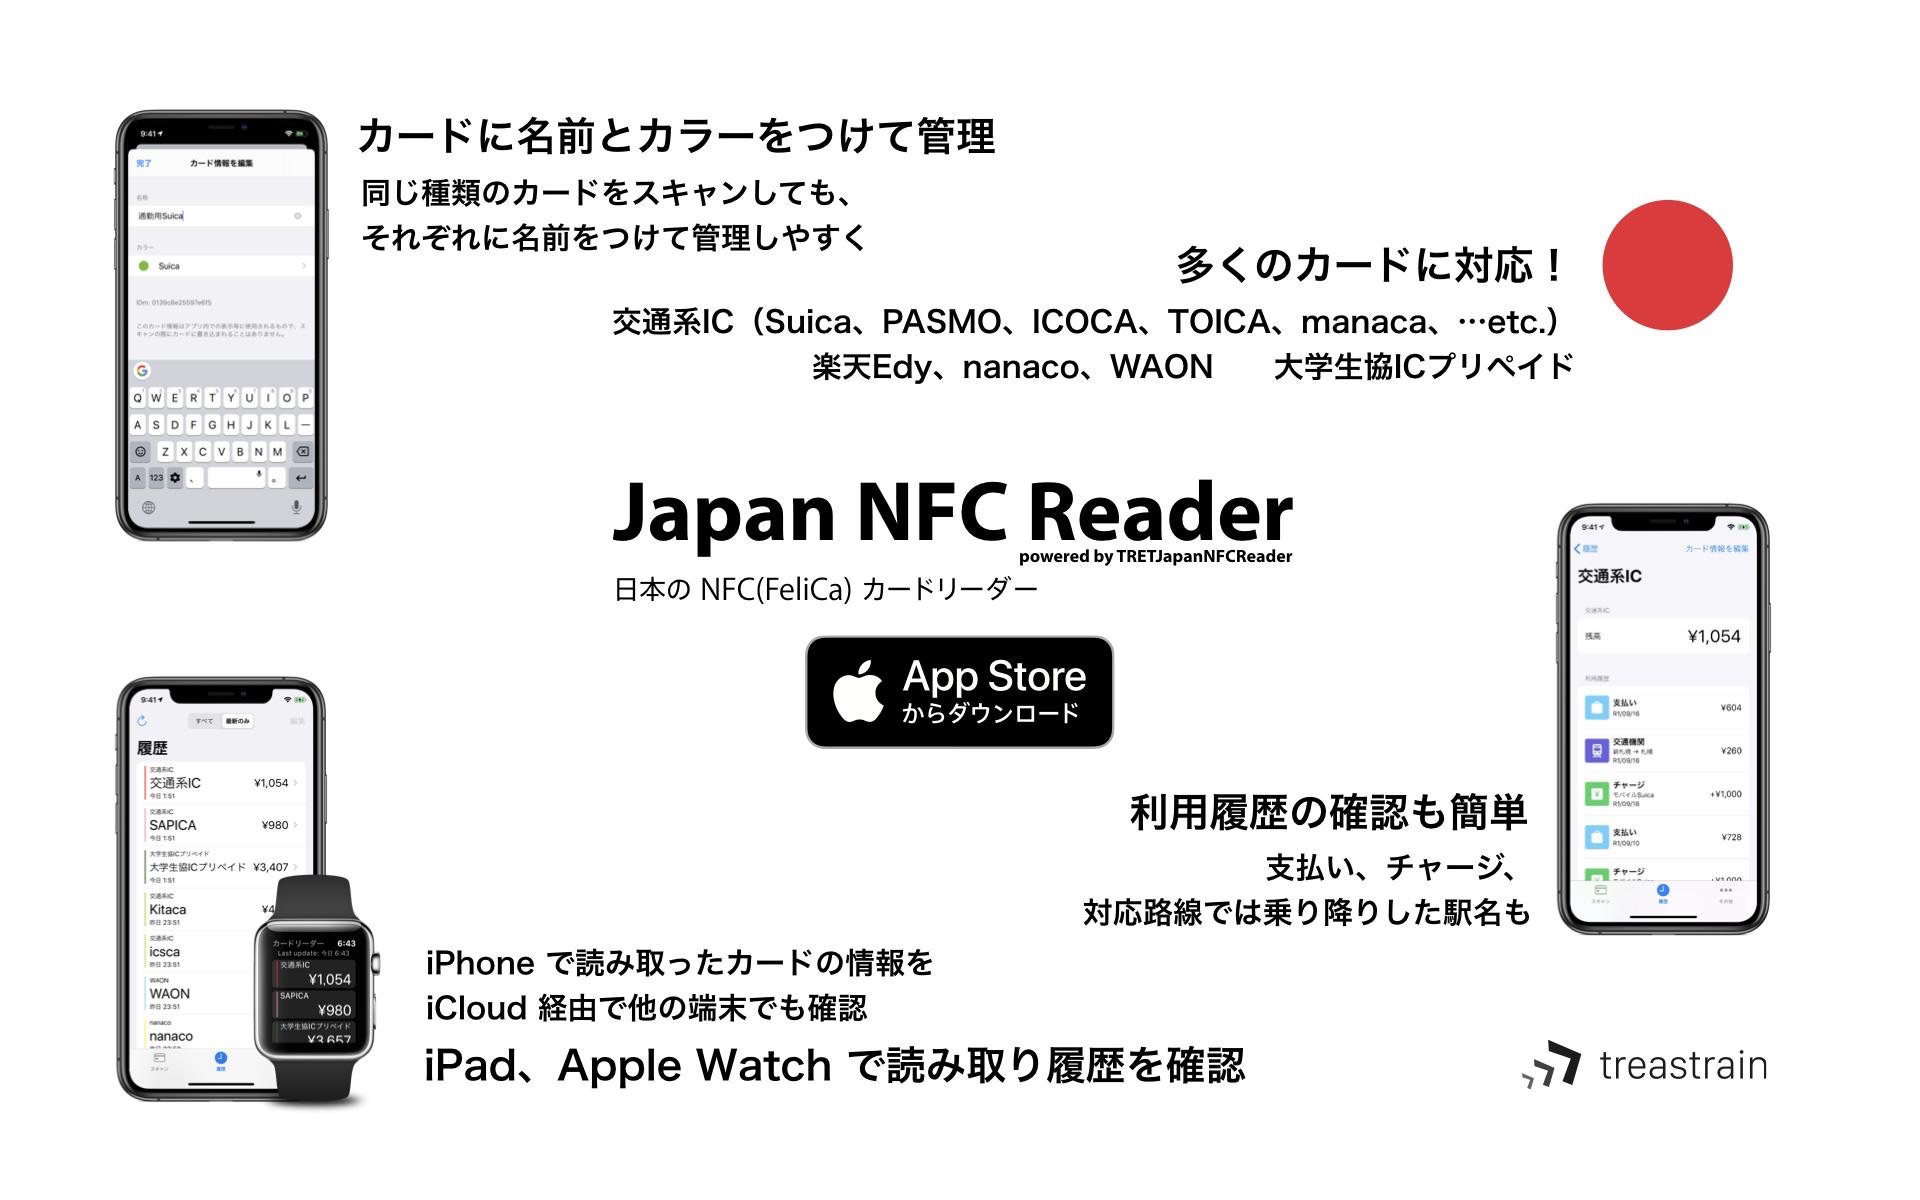 SuicaやPASMOなどの交通系ICカードに加え、楽天Edyやnanaco、WAON、大学生協ICプリペイドといった電子マネーカード の残高や利用履歴も確認できるiPhone用ICカードリーダーアプリ「Japan NFC Reader」がリリース。 | AAPL Ch.